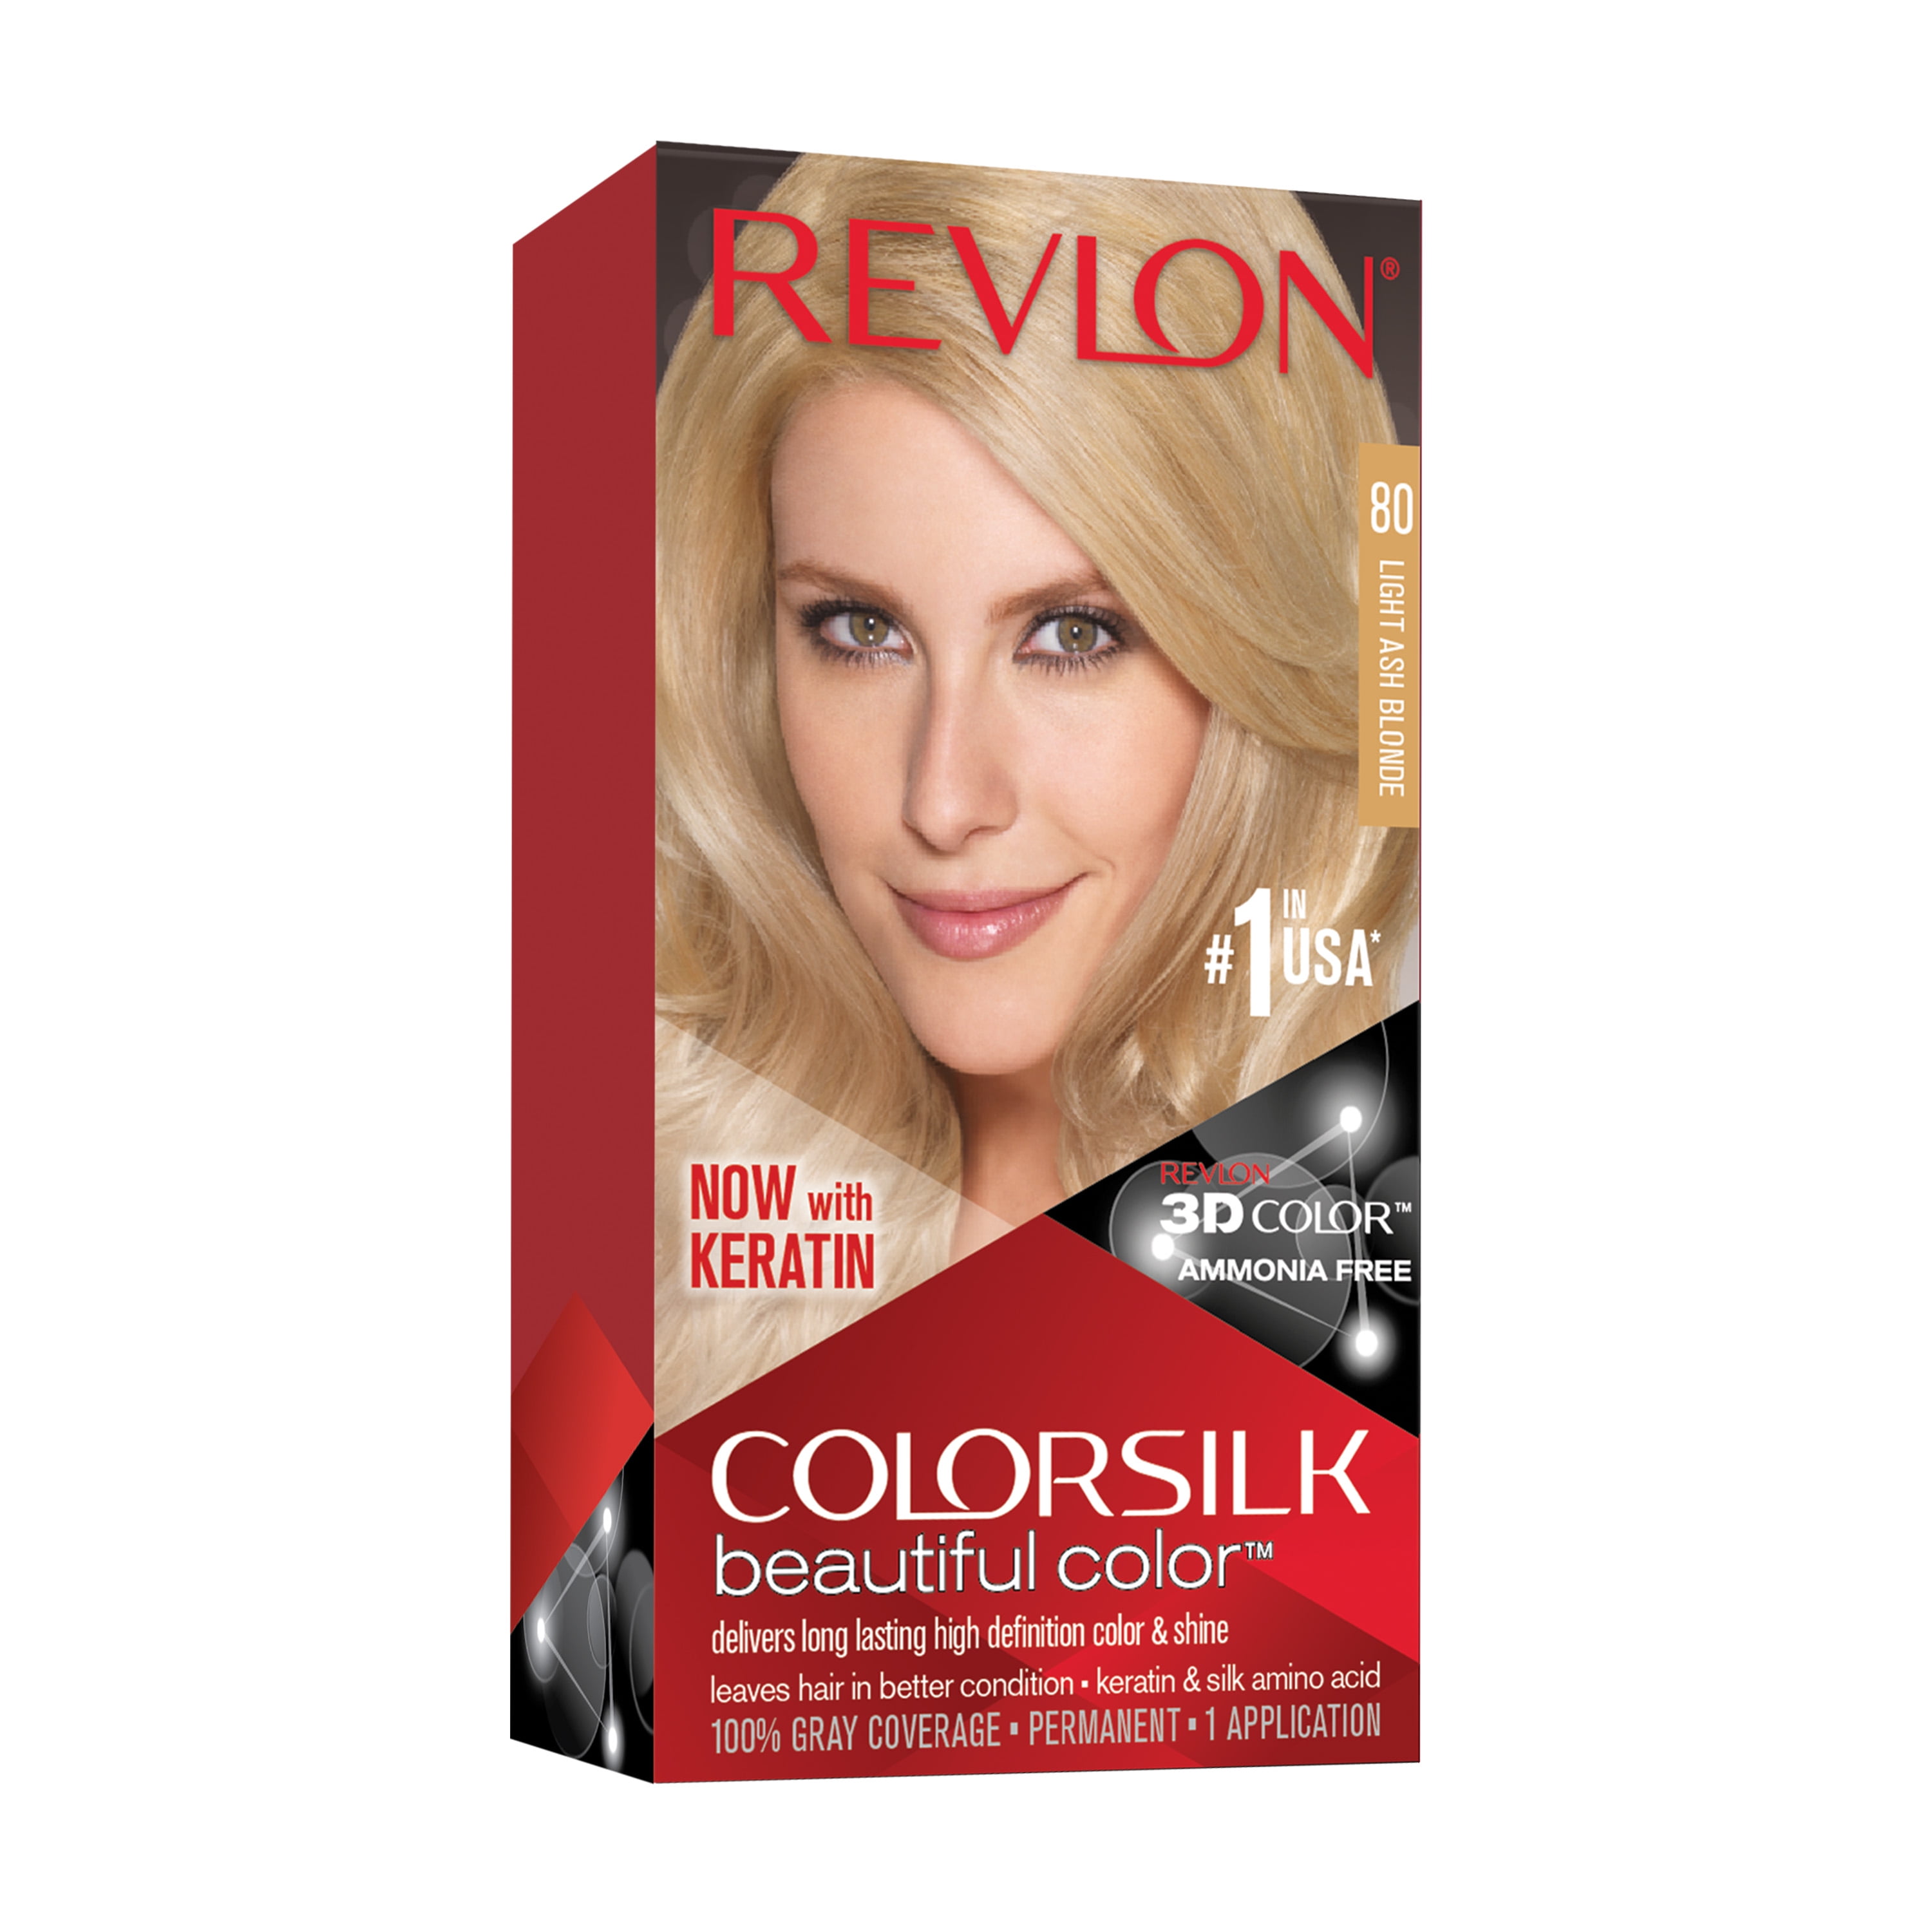 Revlon ColorSilk Beautiful Color Permanent Hair Color, 80 Light Ash Blonde,  1 count - Walmart.com